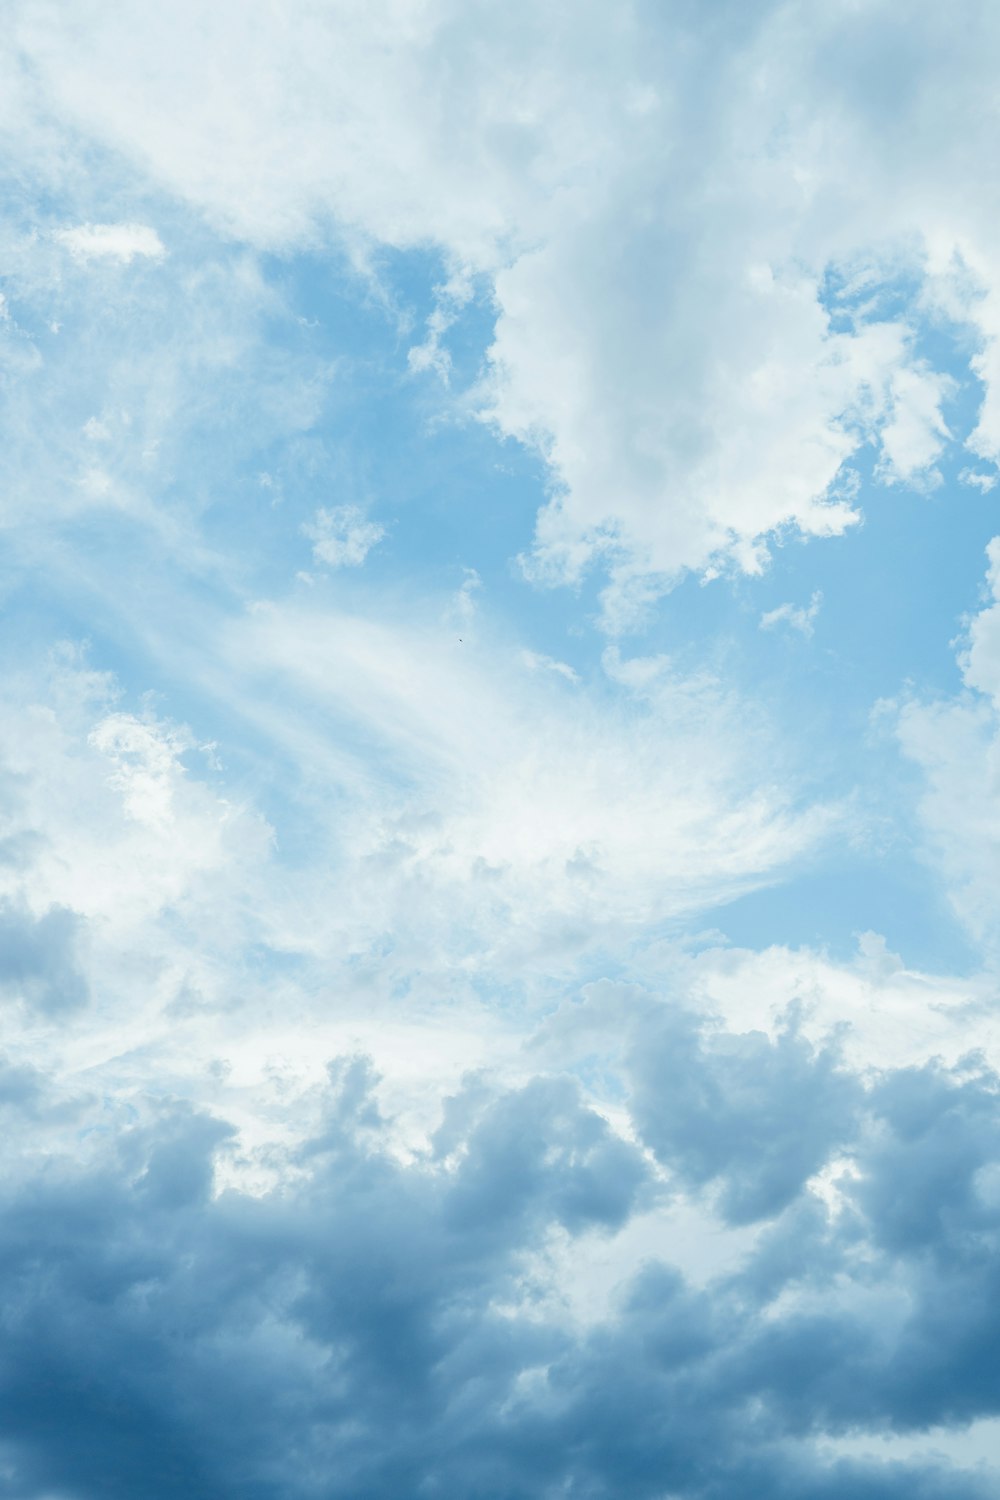 Hãy cùng chúng tôi tìm hiểu những hình ảnh đẹp về đám mây. Sự đa dạng của chúng sẽ khiến bạn ngạc nhiên và thích thú.